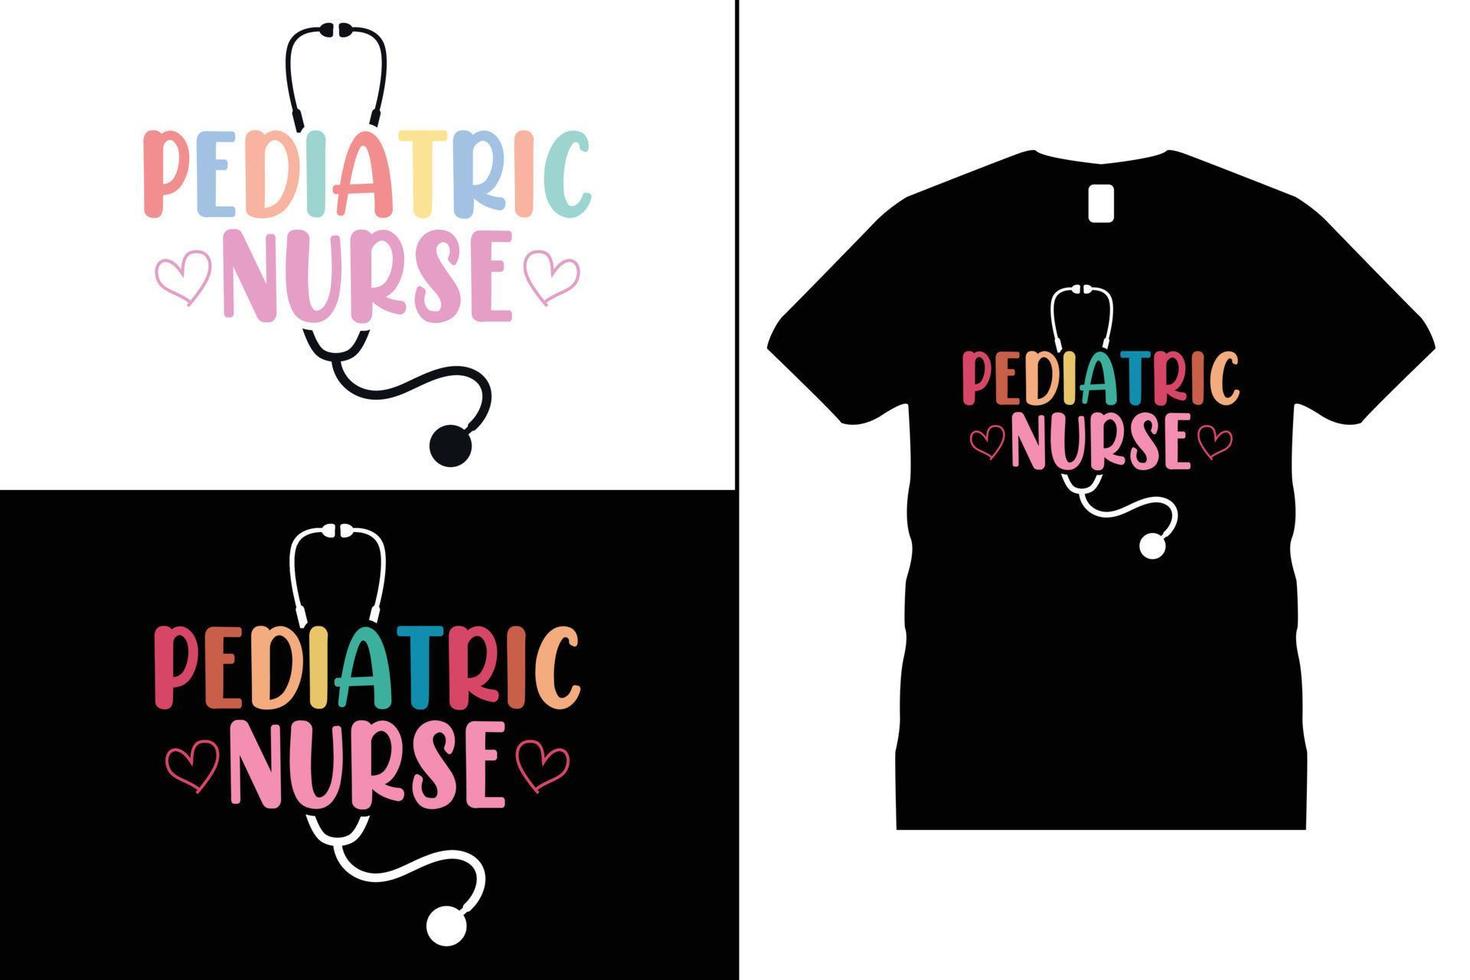 enfermero camiseta diseño. doctor, hospital, tipografía, enfermero amante, enfermero vida, salud vector